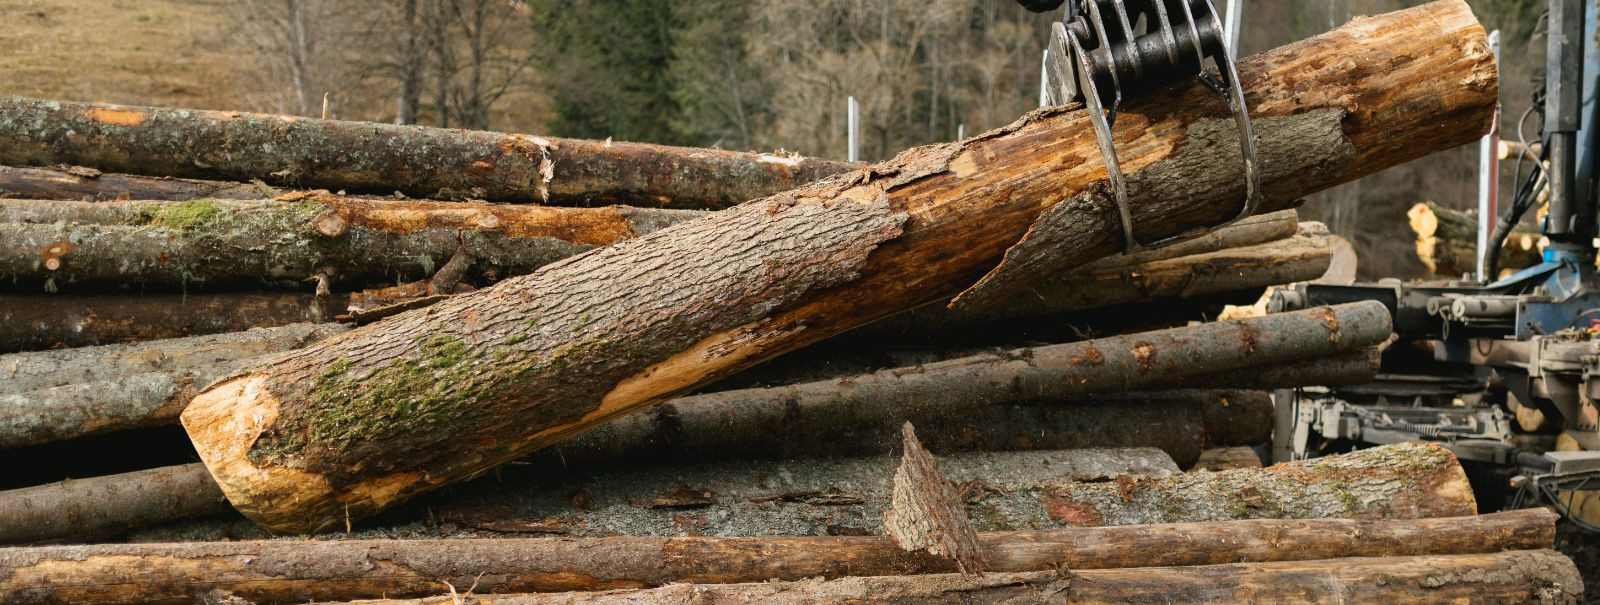 Metsaraieteenused on hädavajalikud globaalse nõudluse rahuldamiseks puidutoodete järele. Kui neid tegevusi ei juhita vastutustundlikult, võivad need põhjustada 